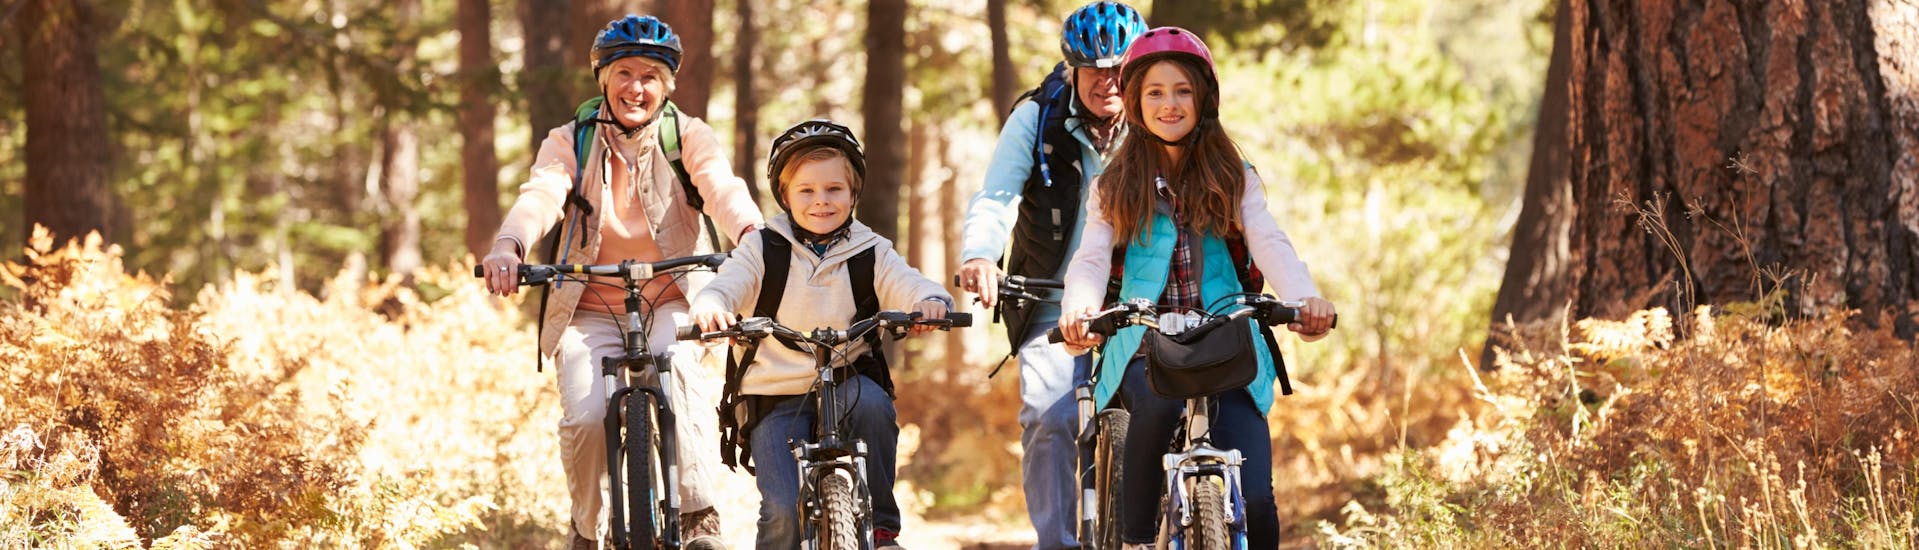 Una familia pasea en bicicleta con unas bicis alquiladas en una tienda local de alquiler de bicicletas.